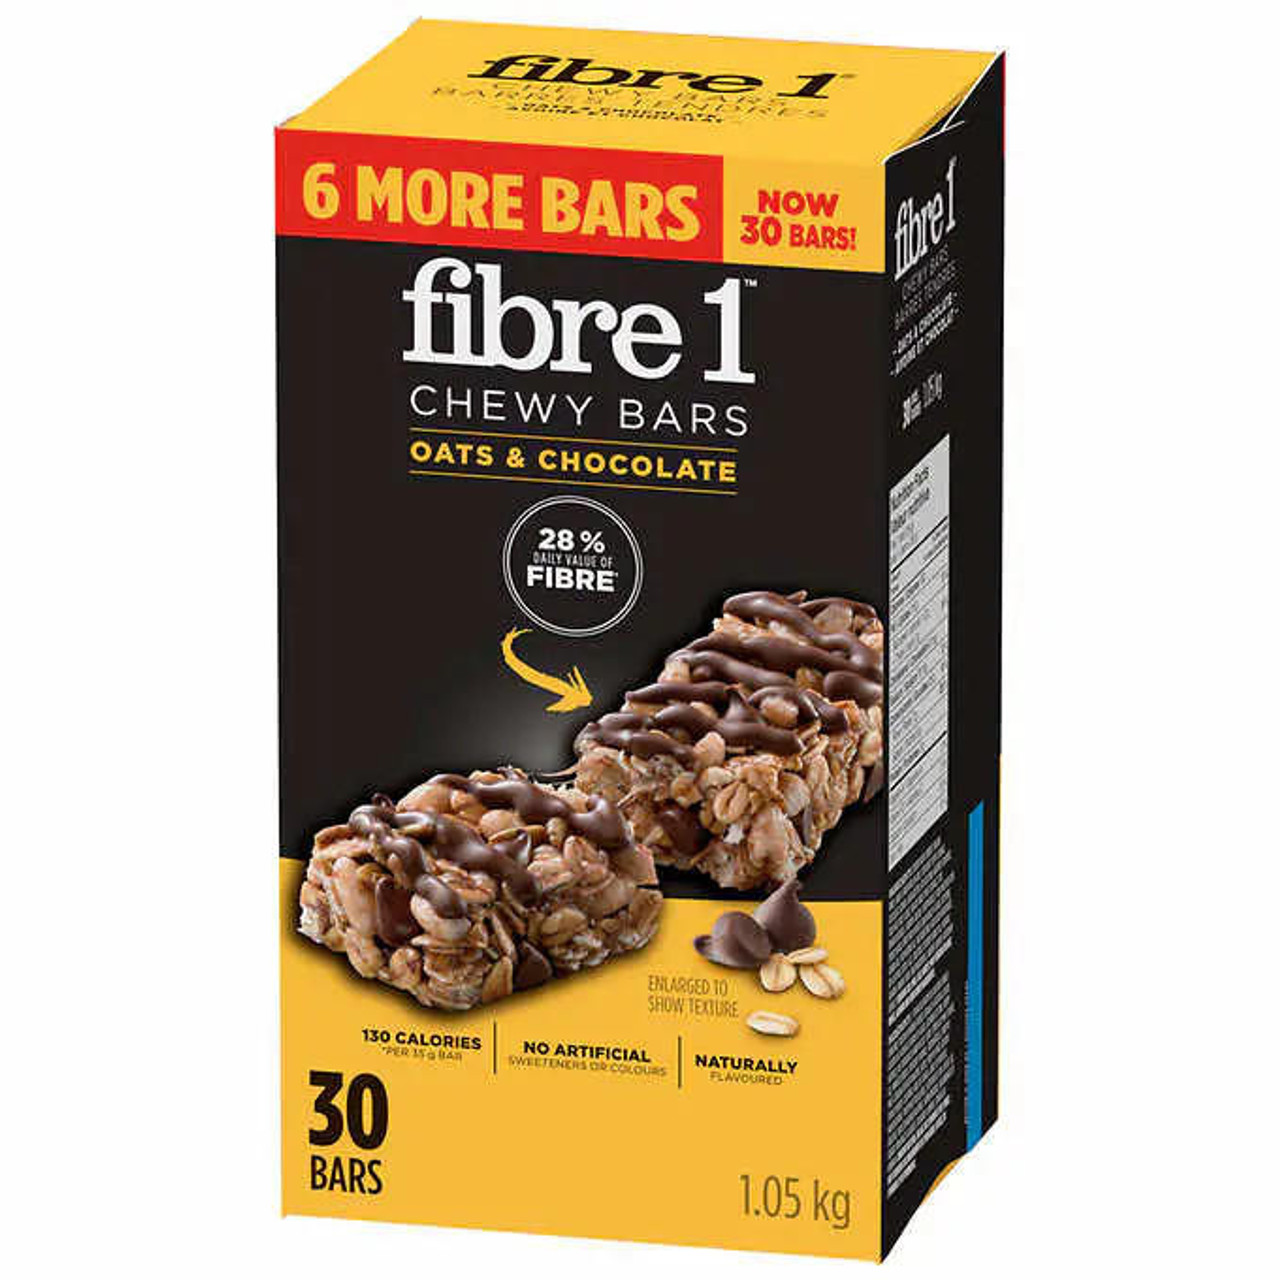 fibre 1 Fibre 1 Chewy Bars Oats & Chocolate - 30 Bars x 35g, High Fiber (6/Case) 